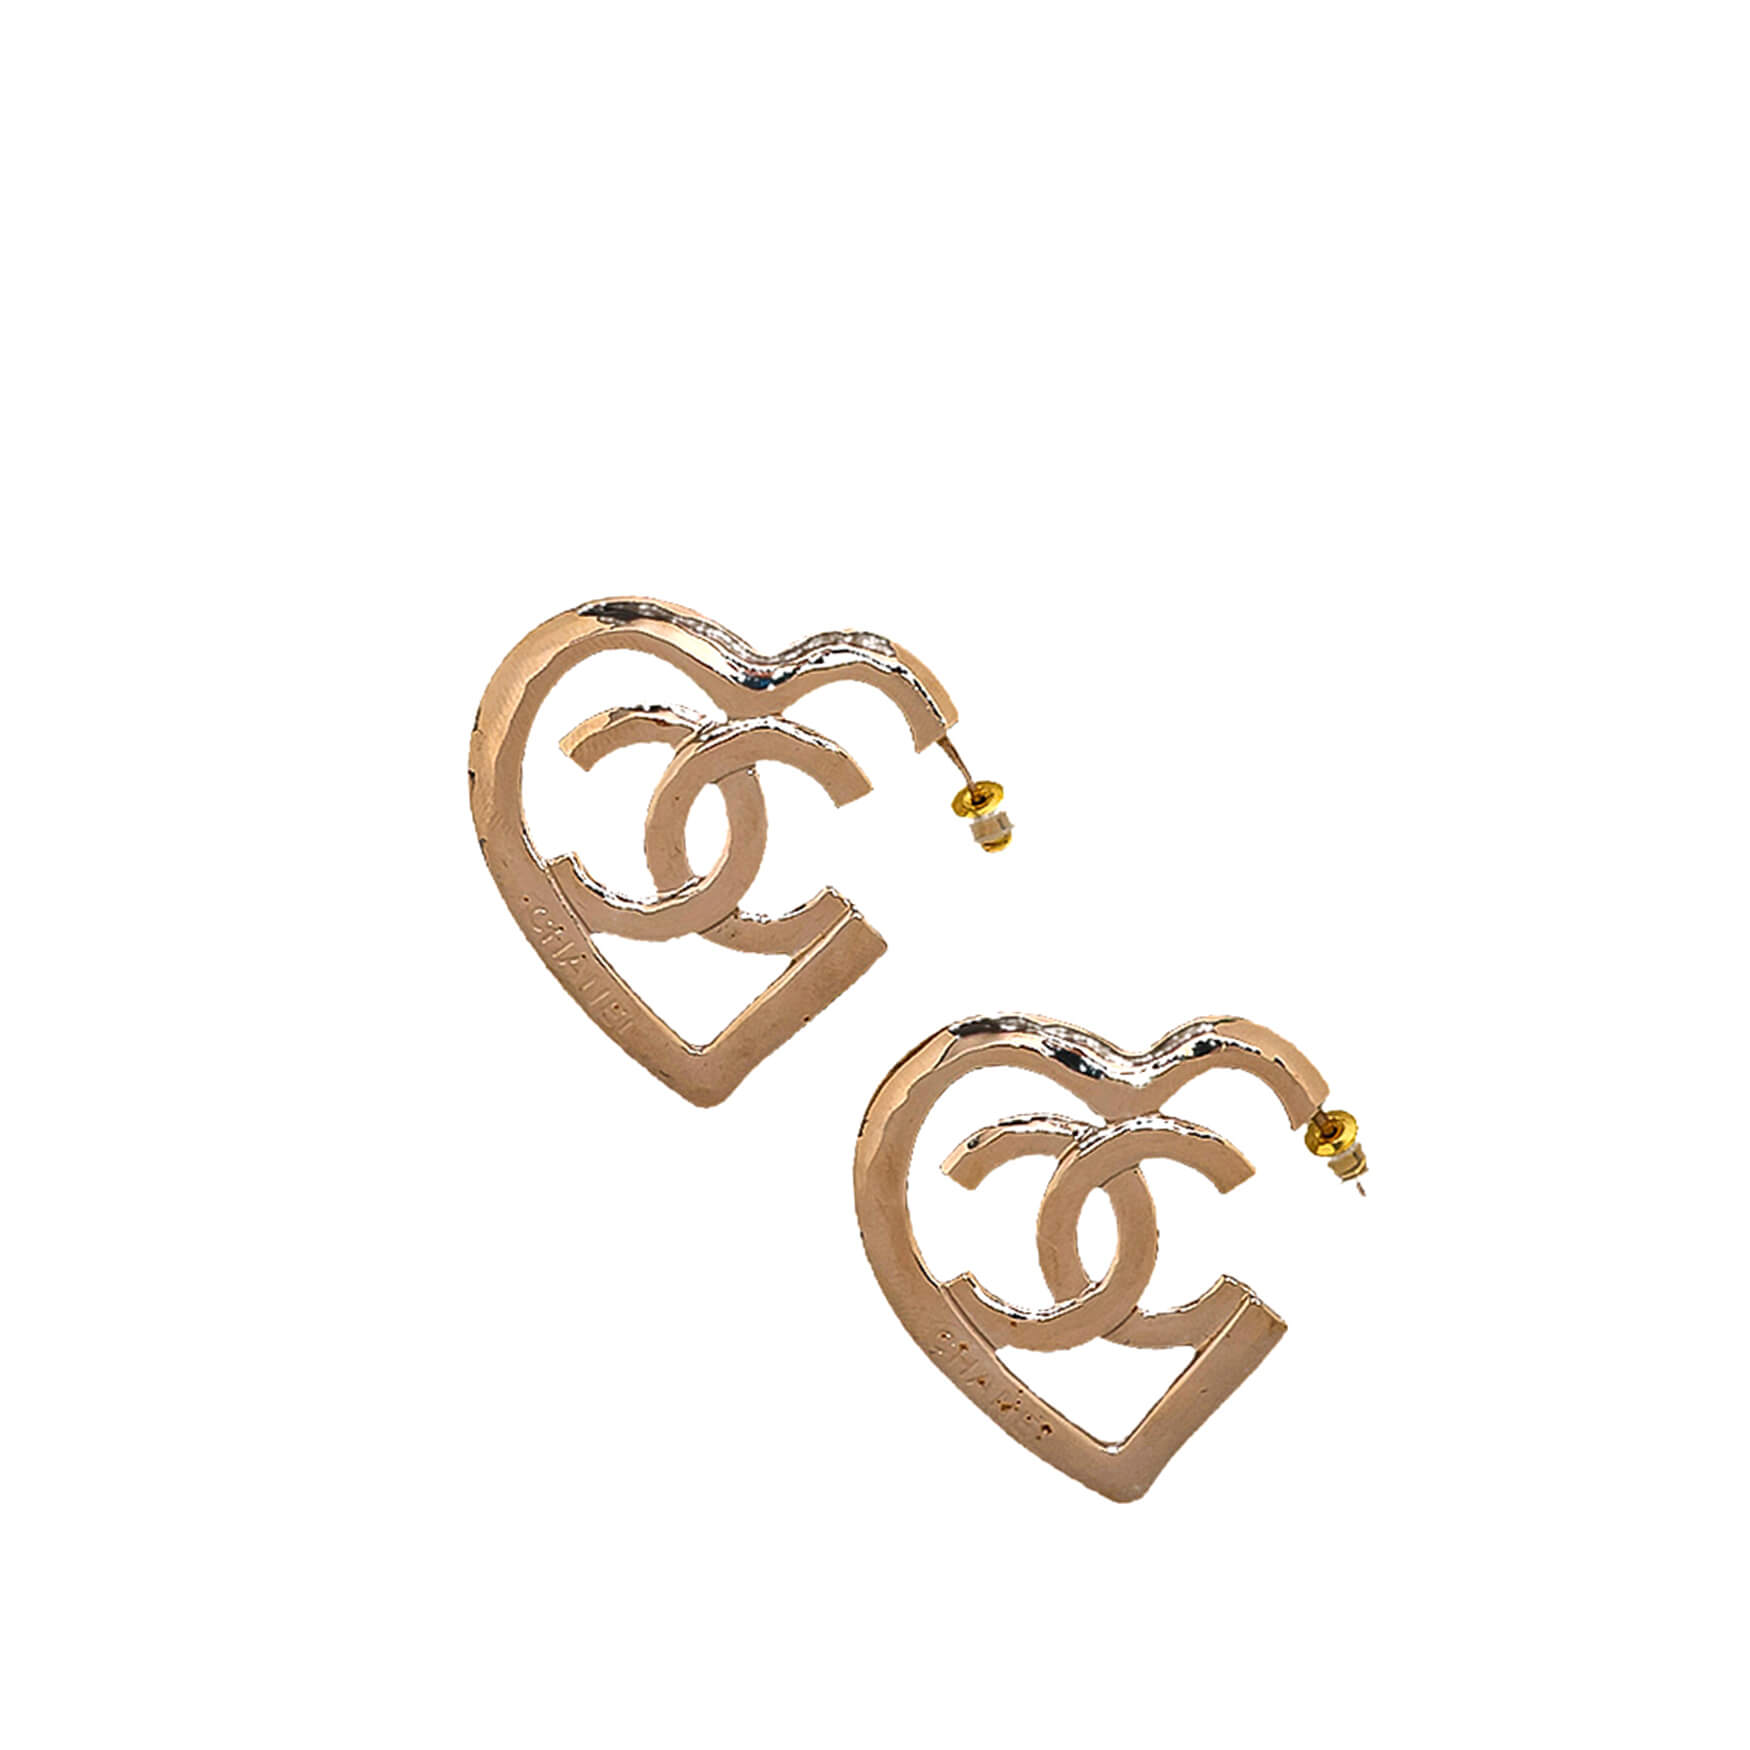 Chanel - Light Gold Tone Heart Earrings